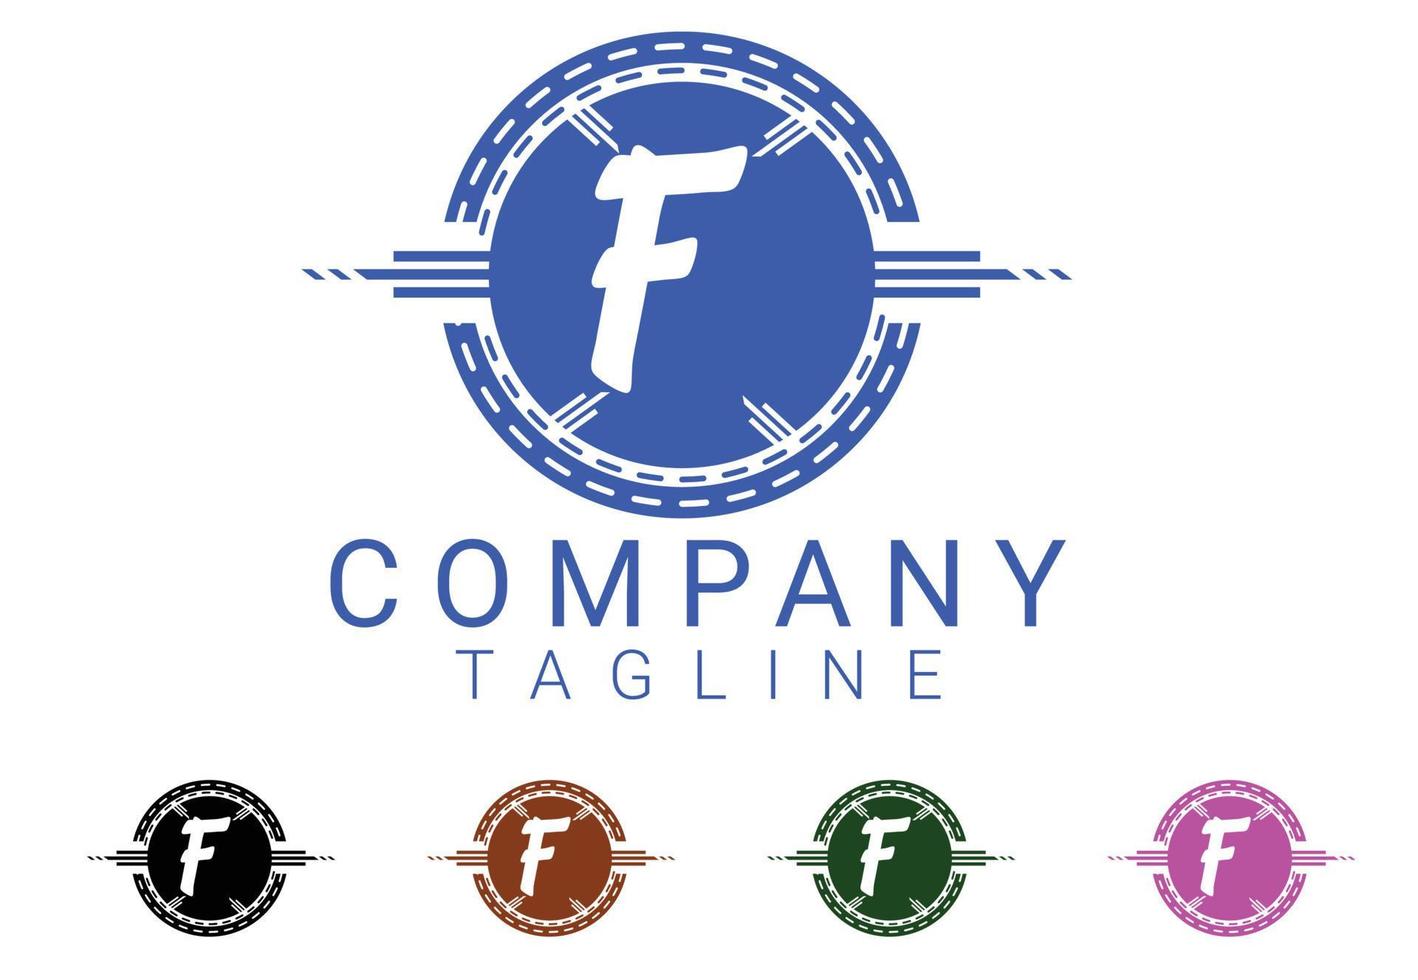 f lettre nouveau logo et icône design vecteur